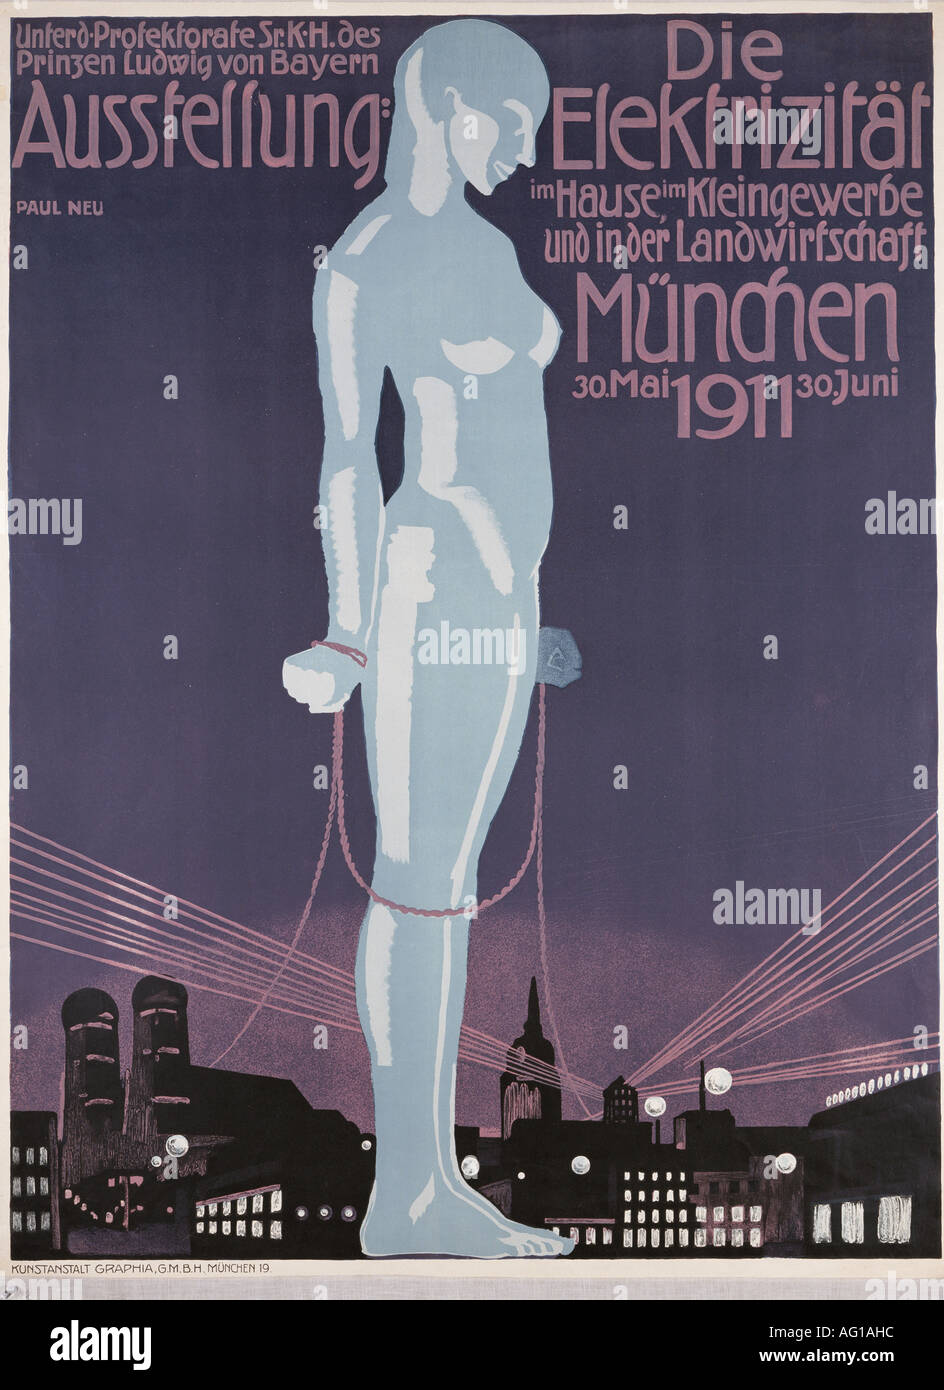 advertising, events, 'Die Elektrizität im Hause, im Kleingewerbe und in der Landwirtschaft', Munich, 30.5.1911 - 30.6.1911, poster, design by Paul Neu (1881 - 1940), , Stock Photo